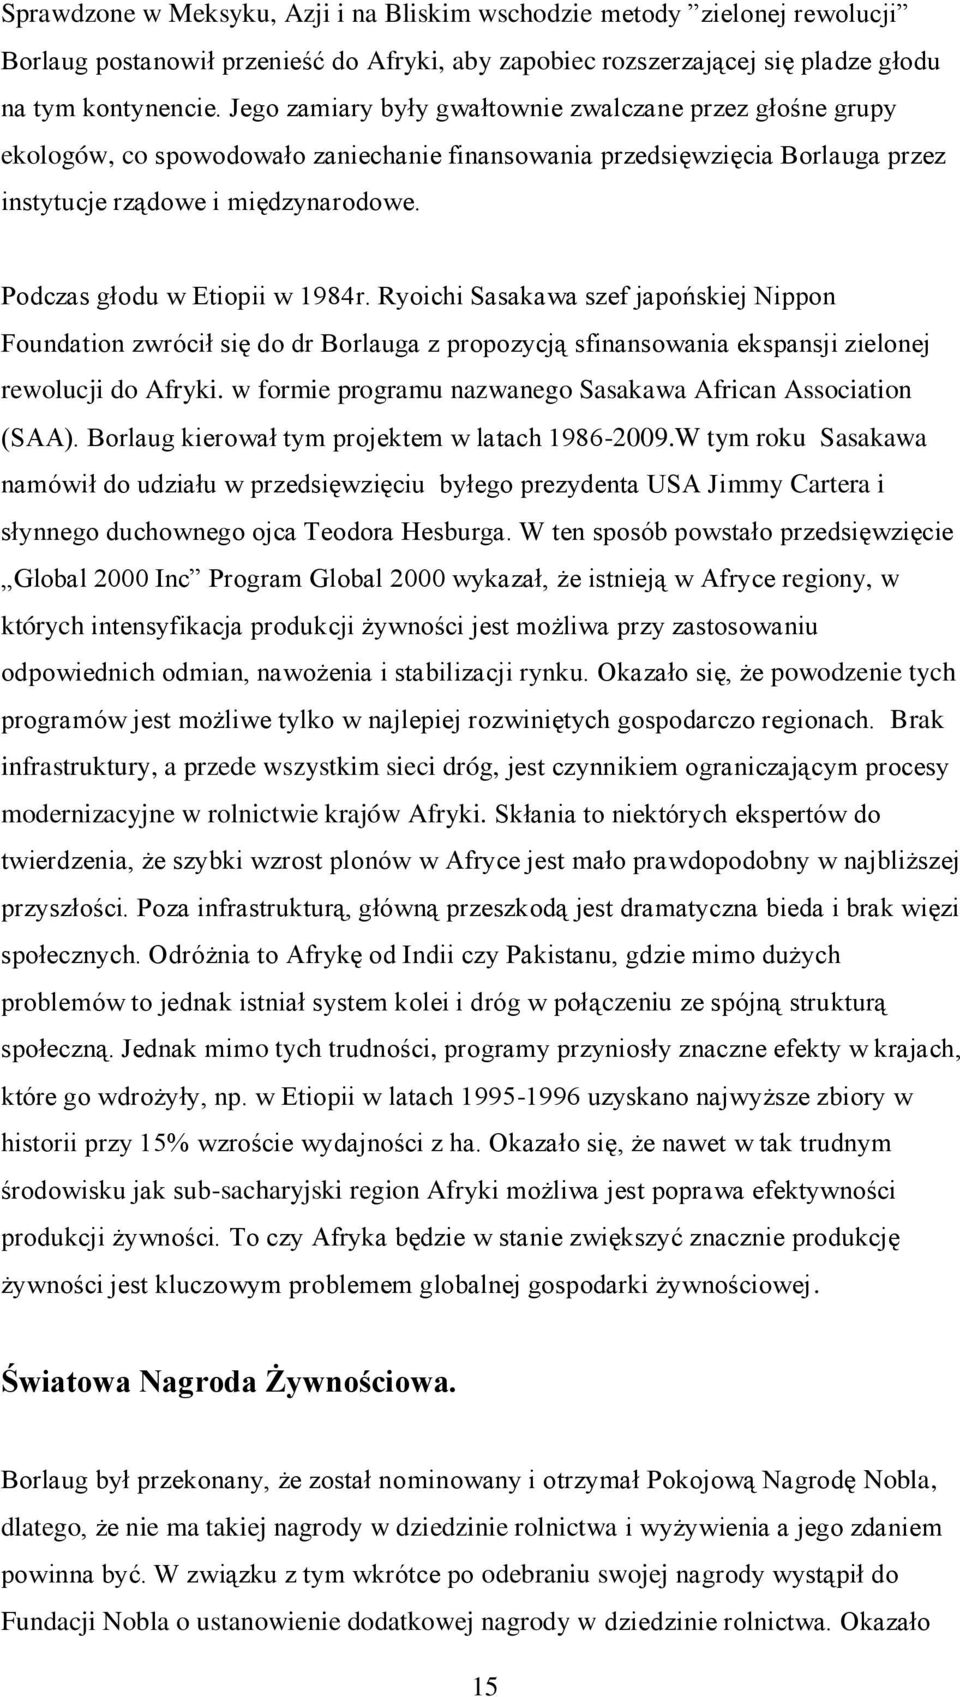 Podczas głodu w Etiopii w 1984r. Ryoichi Sasakawa szef japońskiej Nippon Foundation zwrócił się do dr Borlauga z propozycją sfinansowania ekspansji zielonej rewolucji do Afryki.